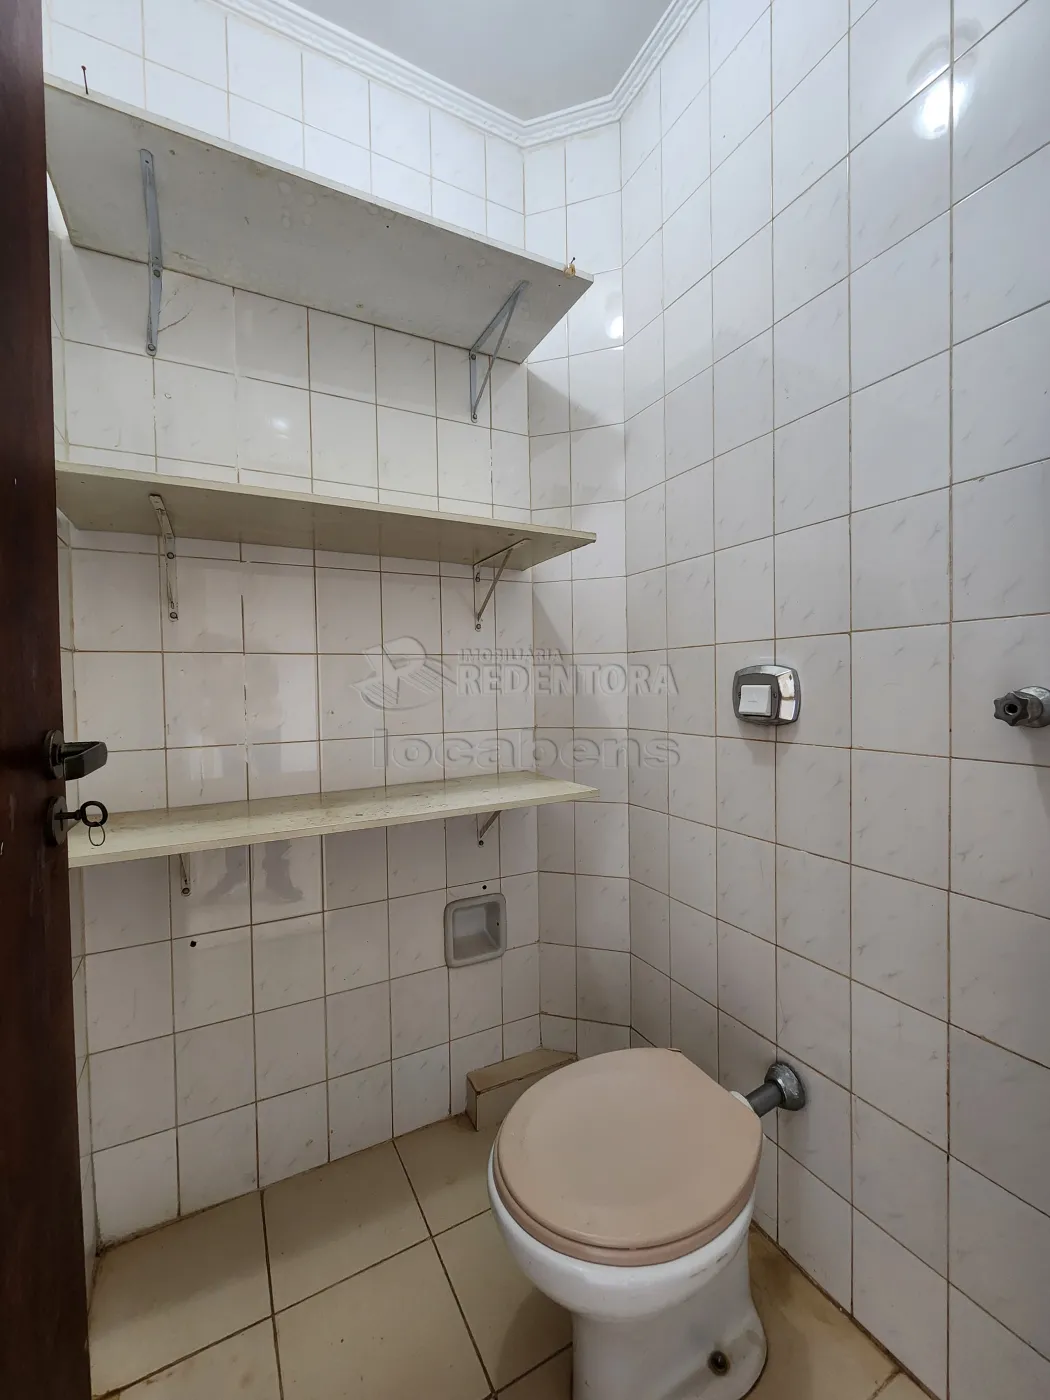 Alugar Apartamento / Padrão em São José do Rio Preto R$ 1.800,00 - Foto 15